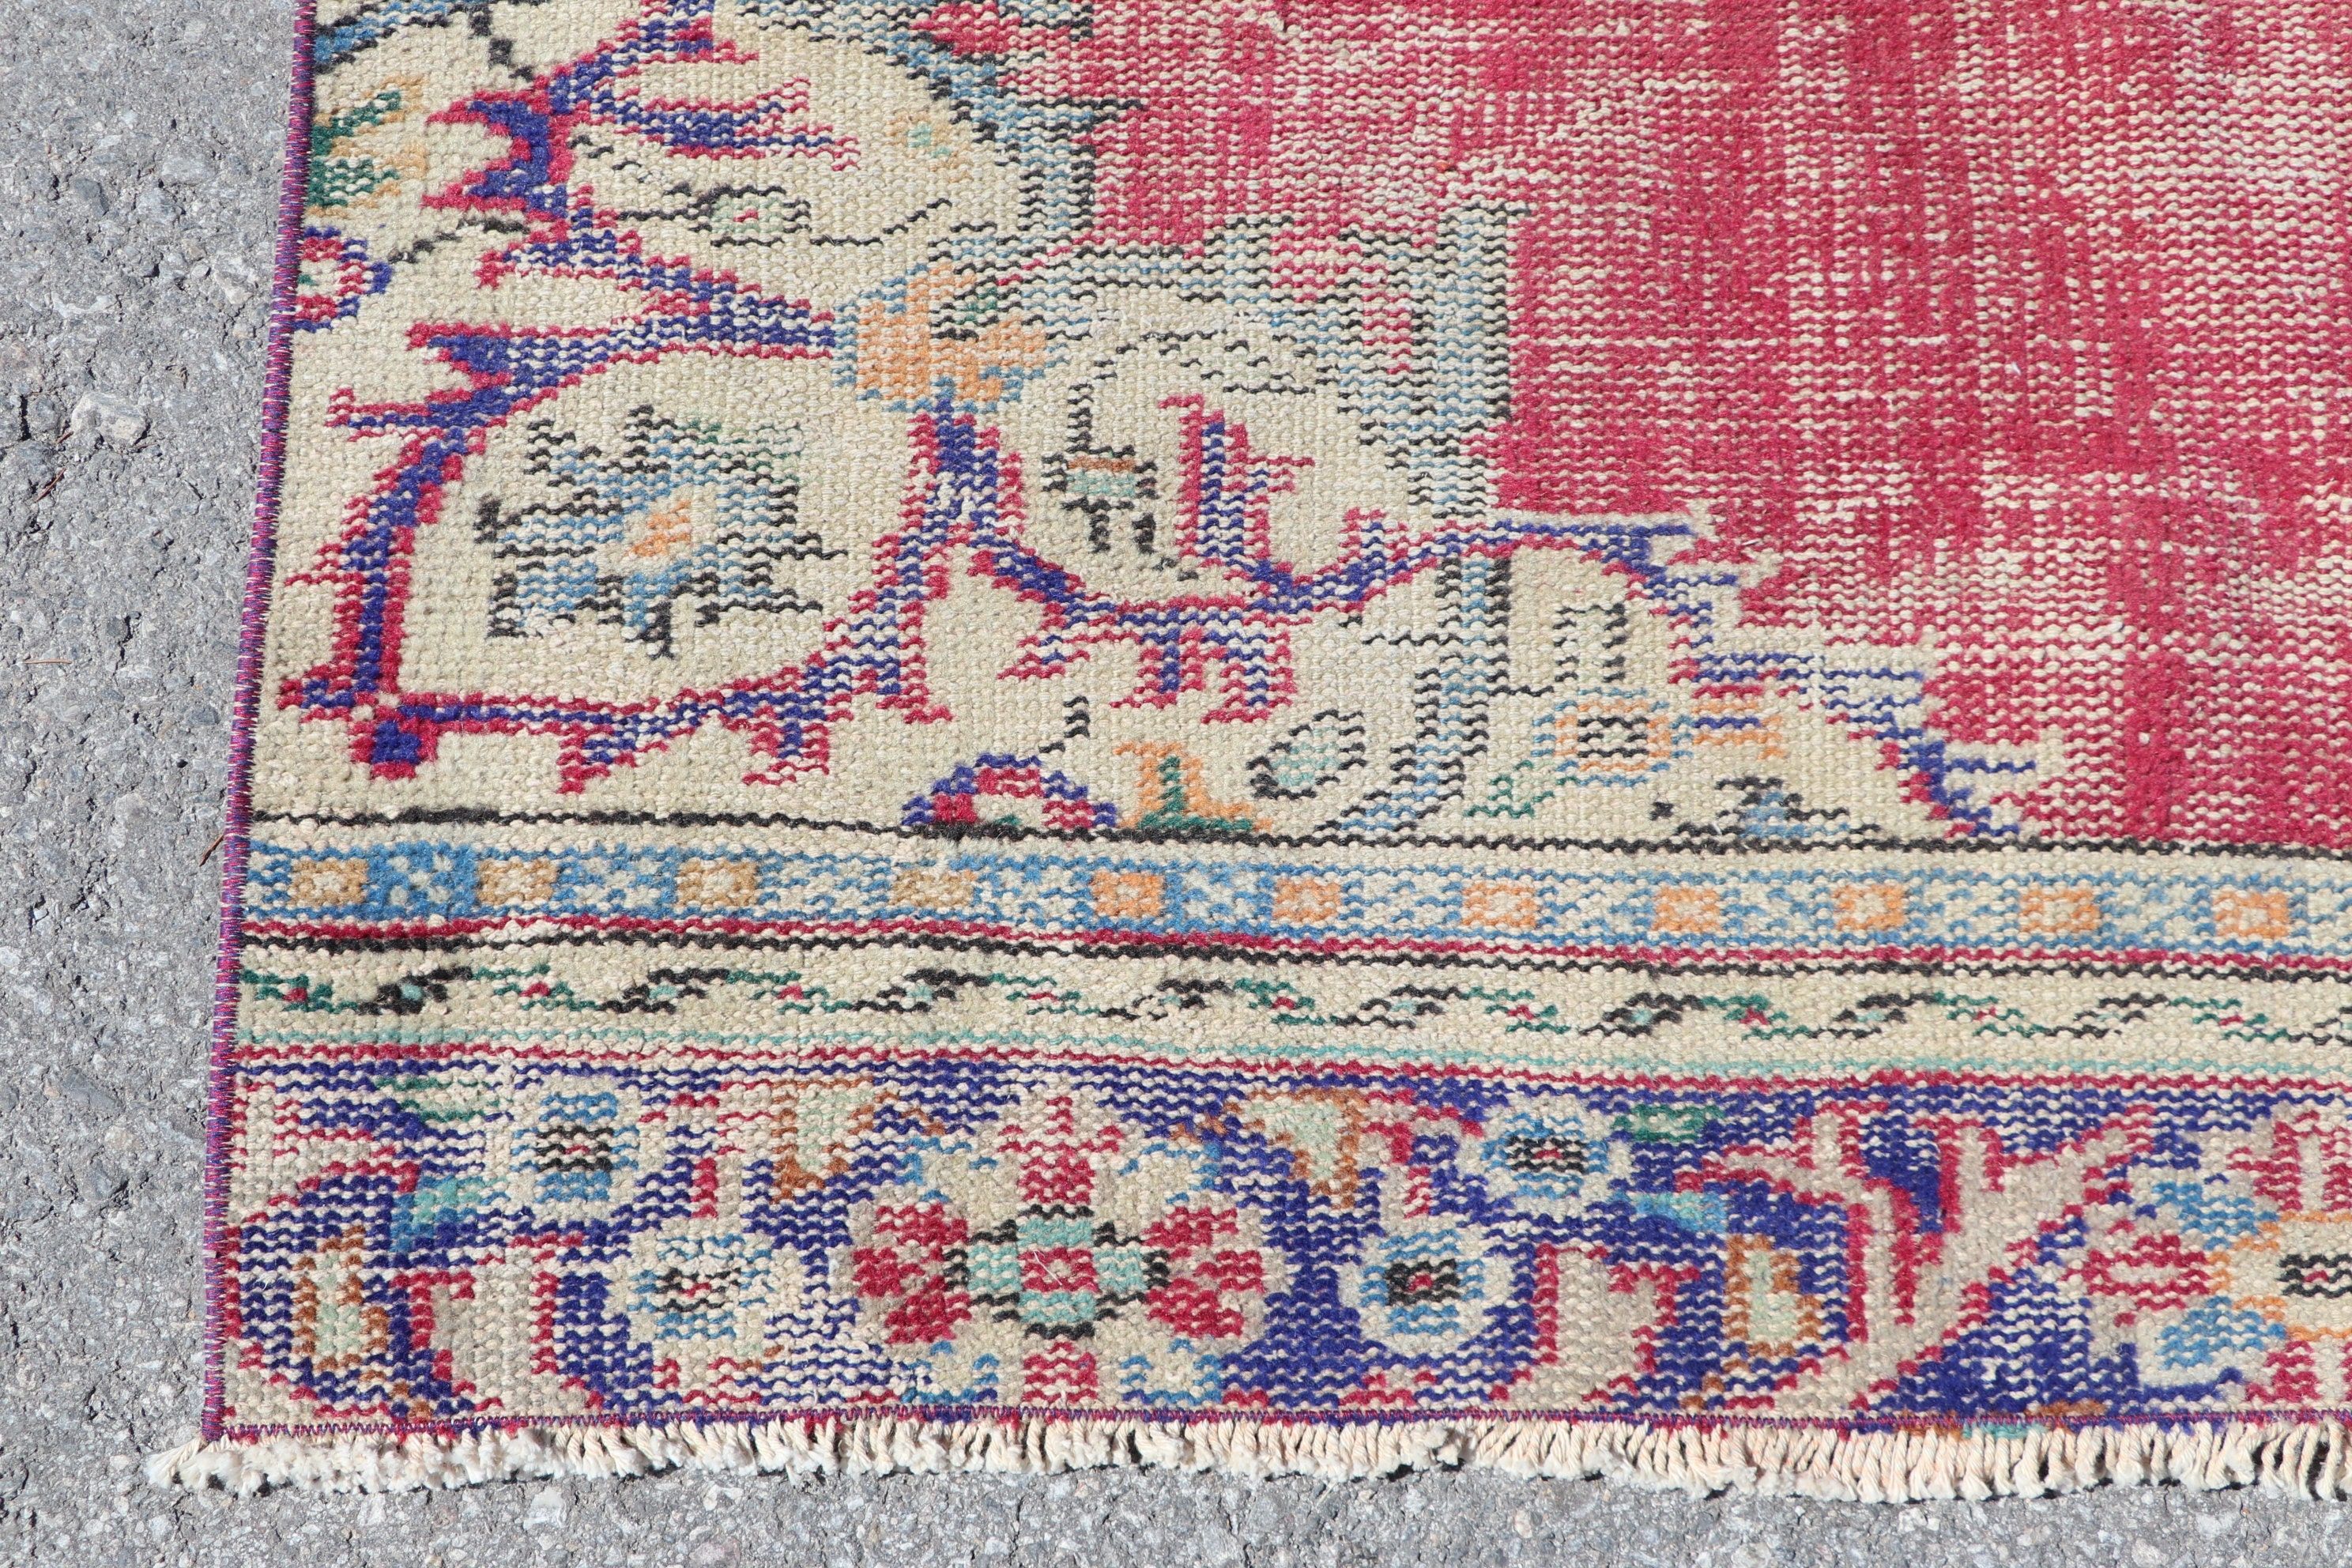 Vintage Rug, Nursery Rug, Anatolian Rug, Turkish Rug, Floor Rugs, Vintage Decor Rug, Red  4.2x8.8 ft Area Rug